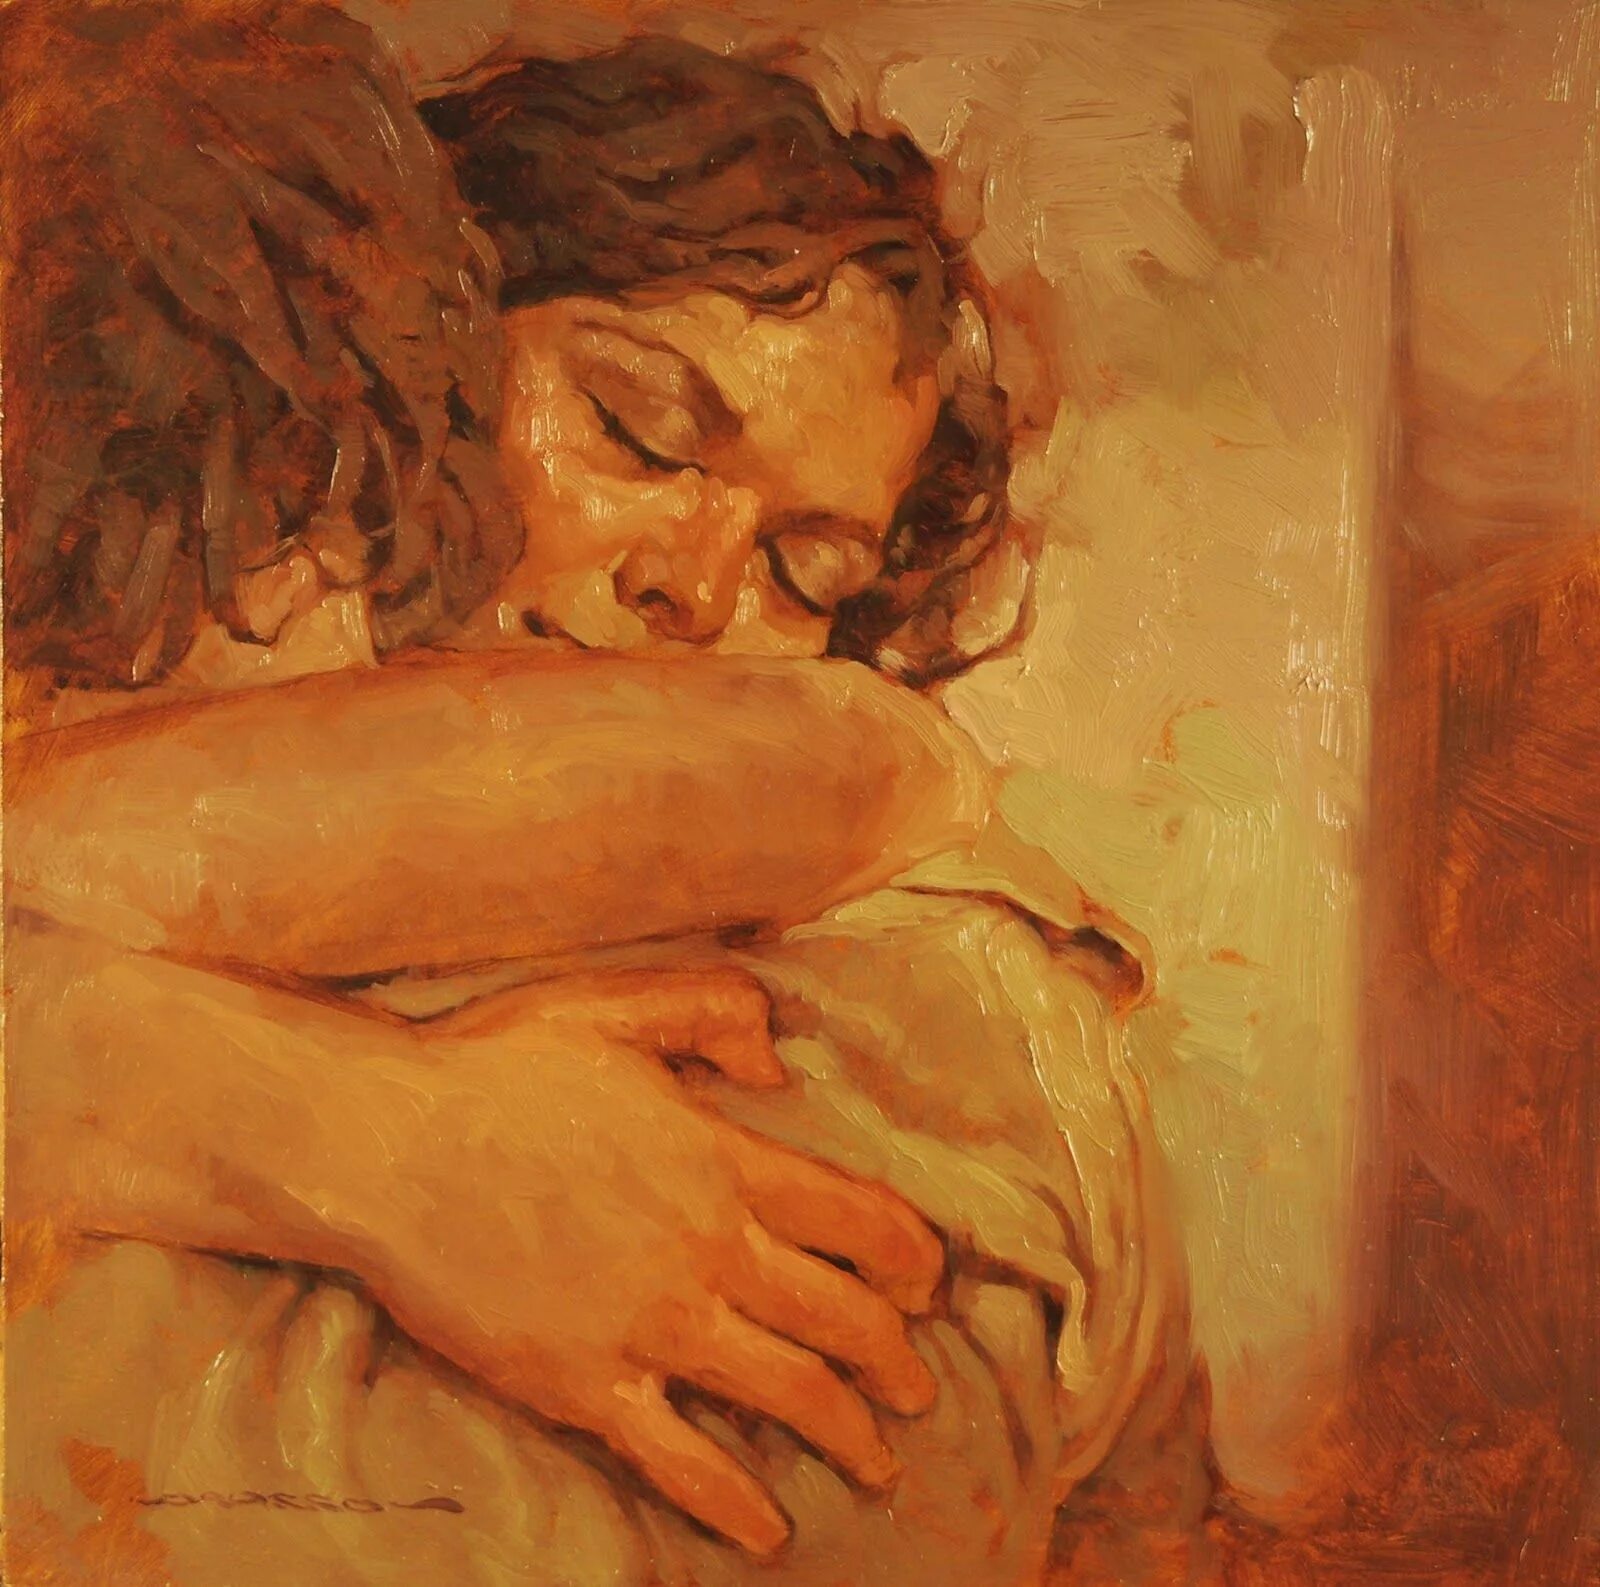 Сын поцеловал мать. Картины художника Джозефа Лорассо.